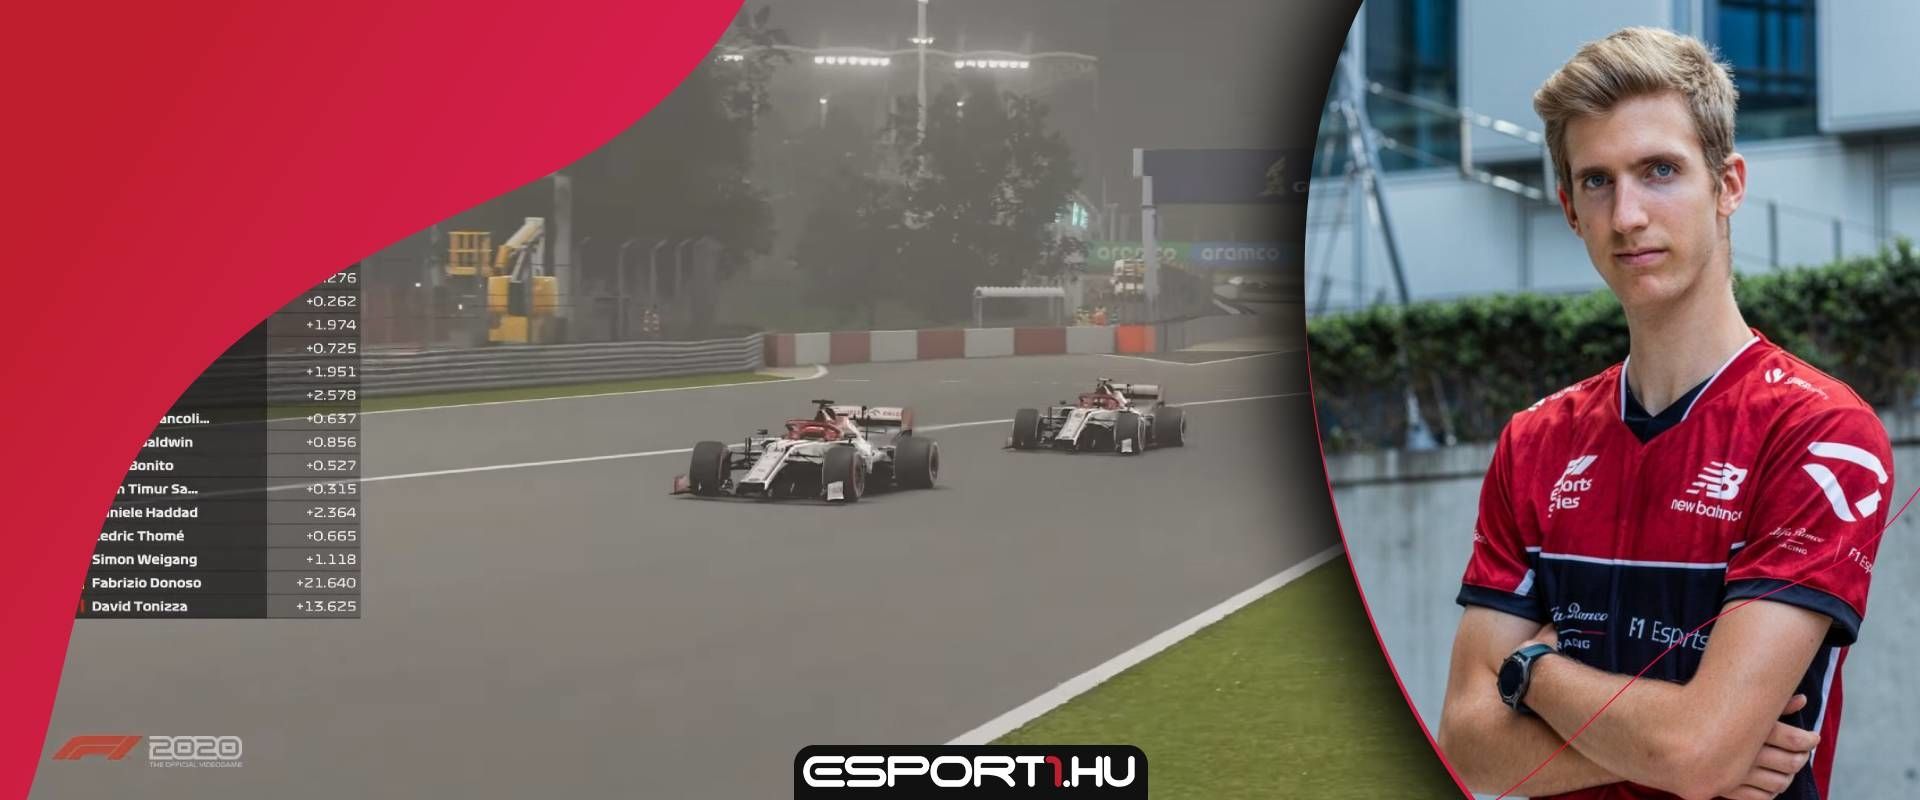 Újabb dobogót követően Bereznay Dani összetettben a 3. az F1 Esports bajnokságban